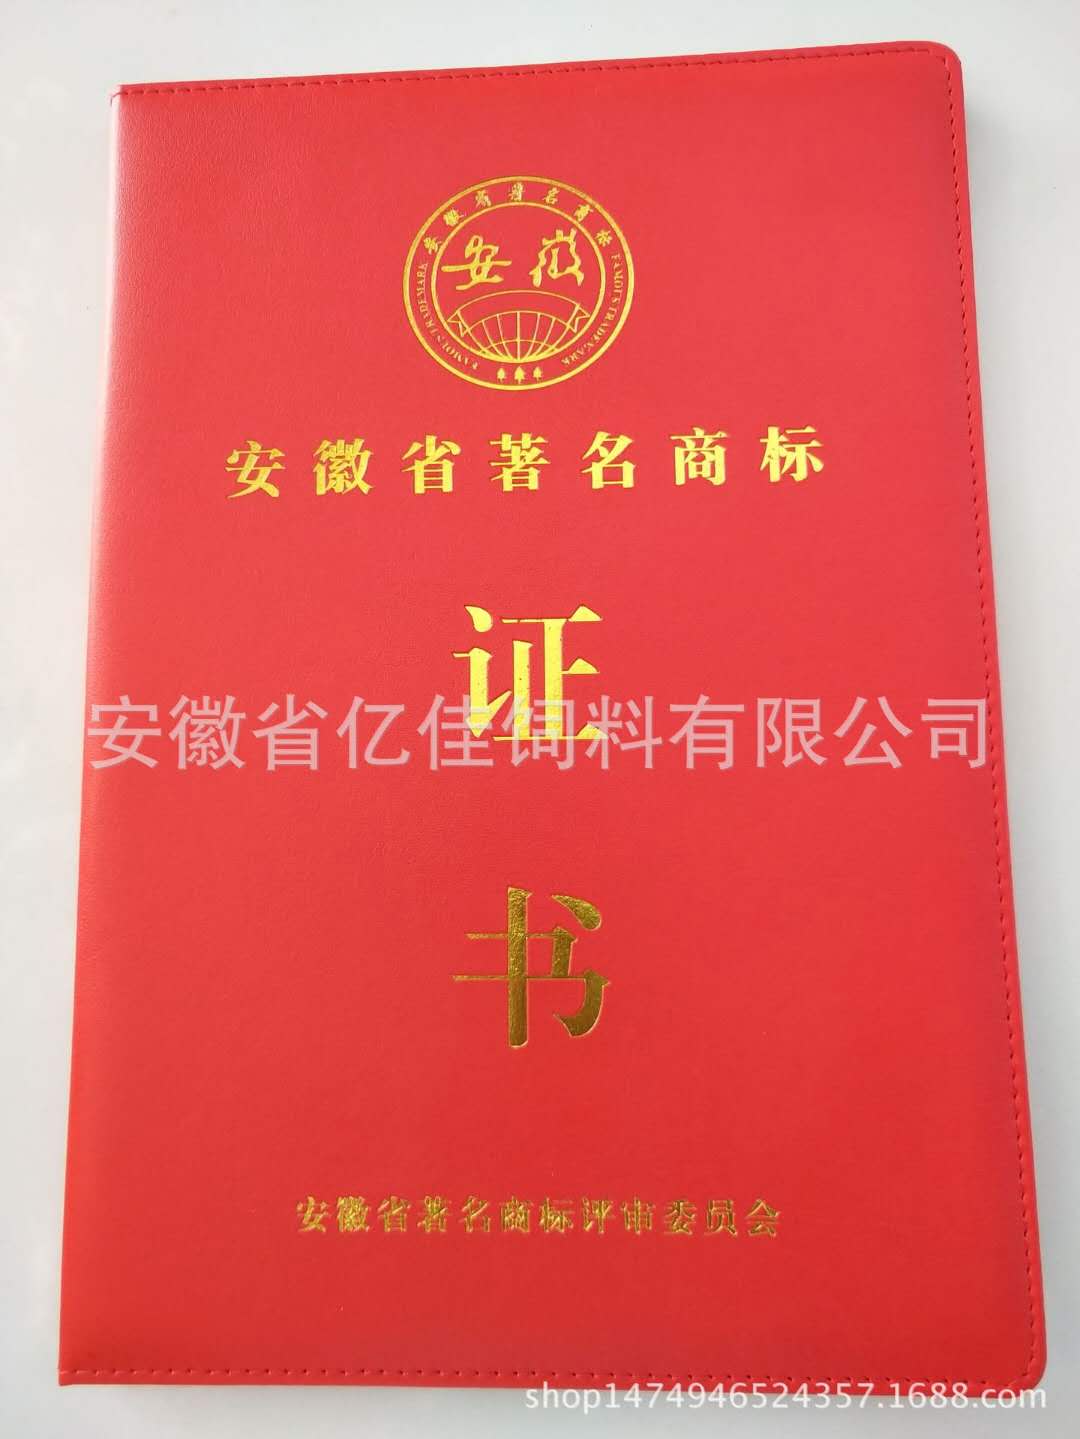 安徽省著名商标证书